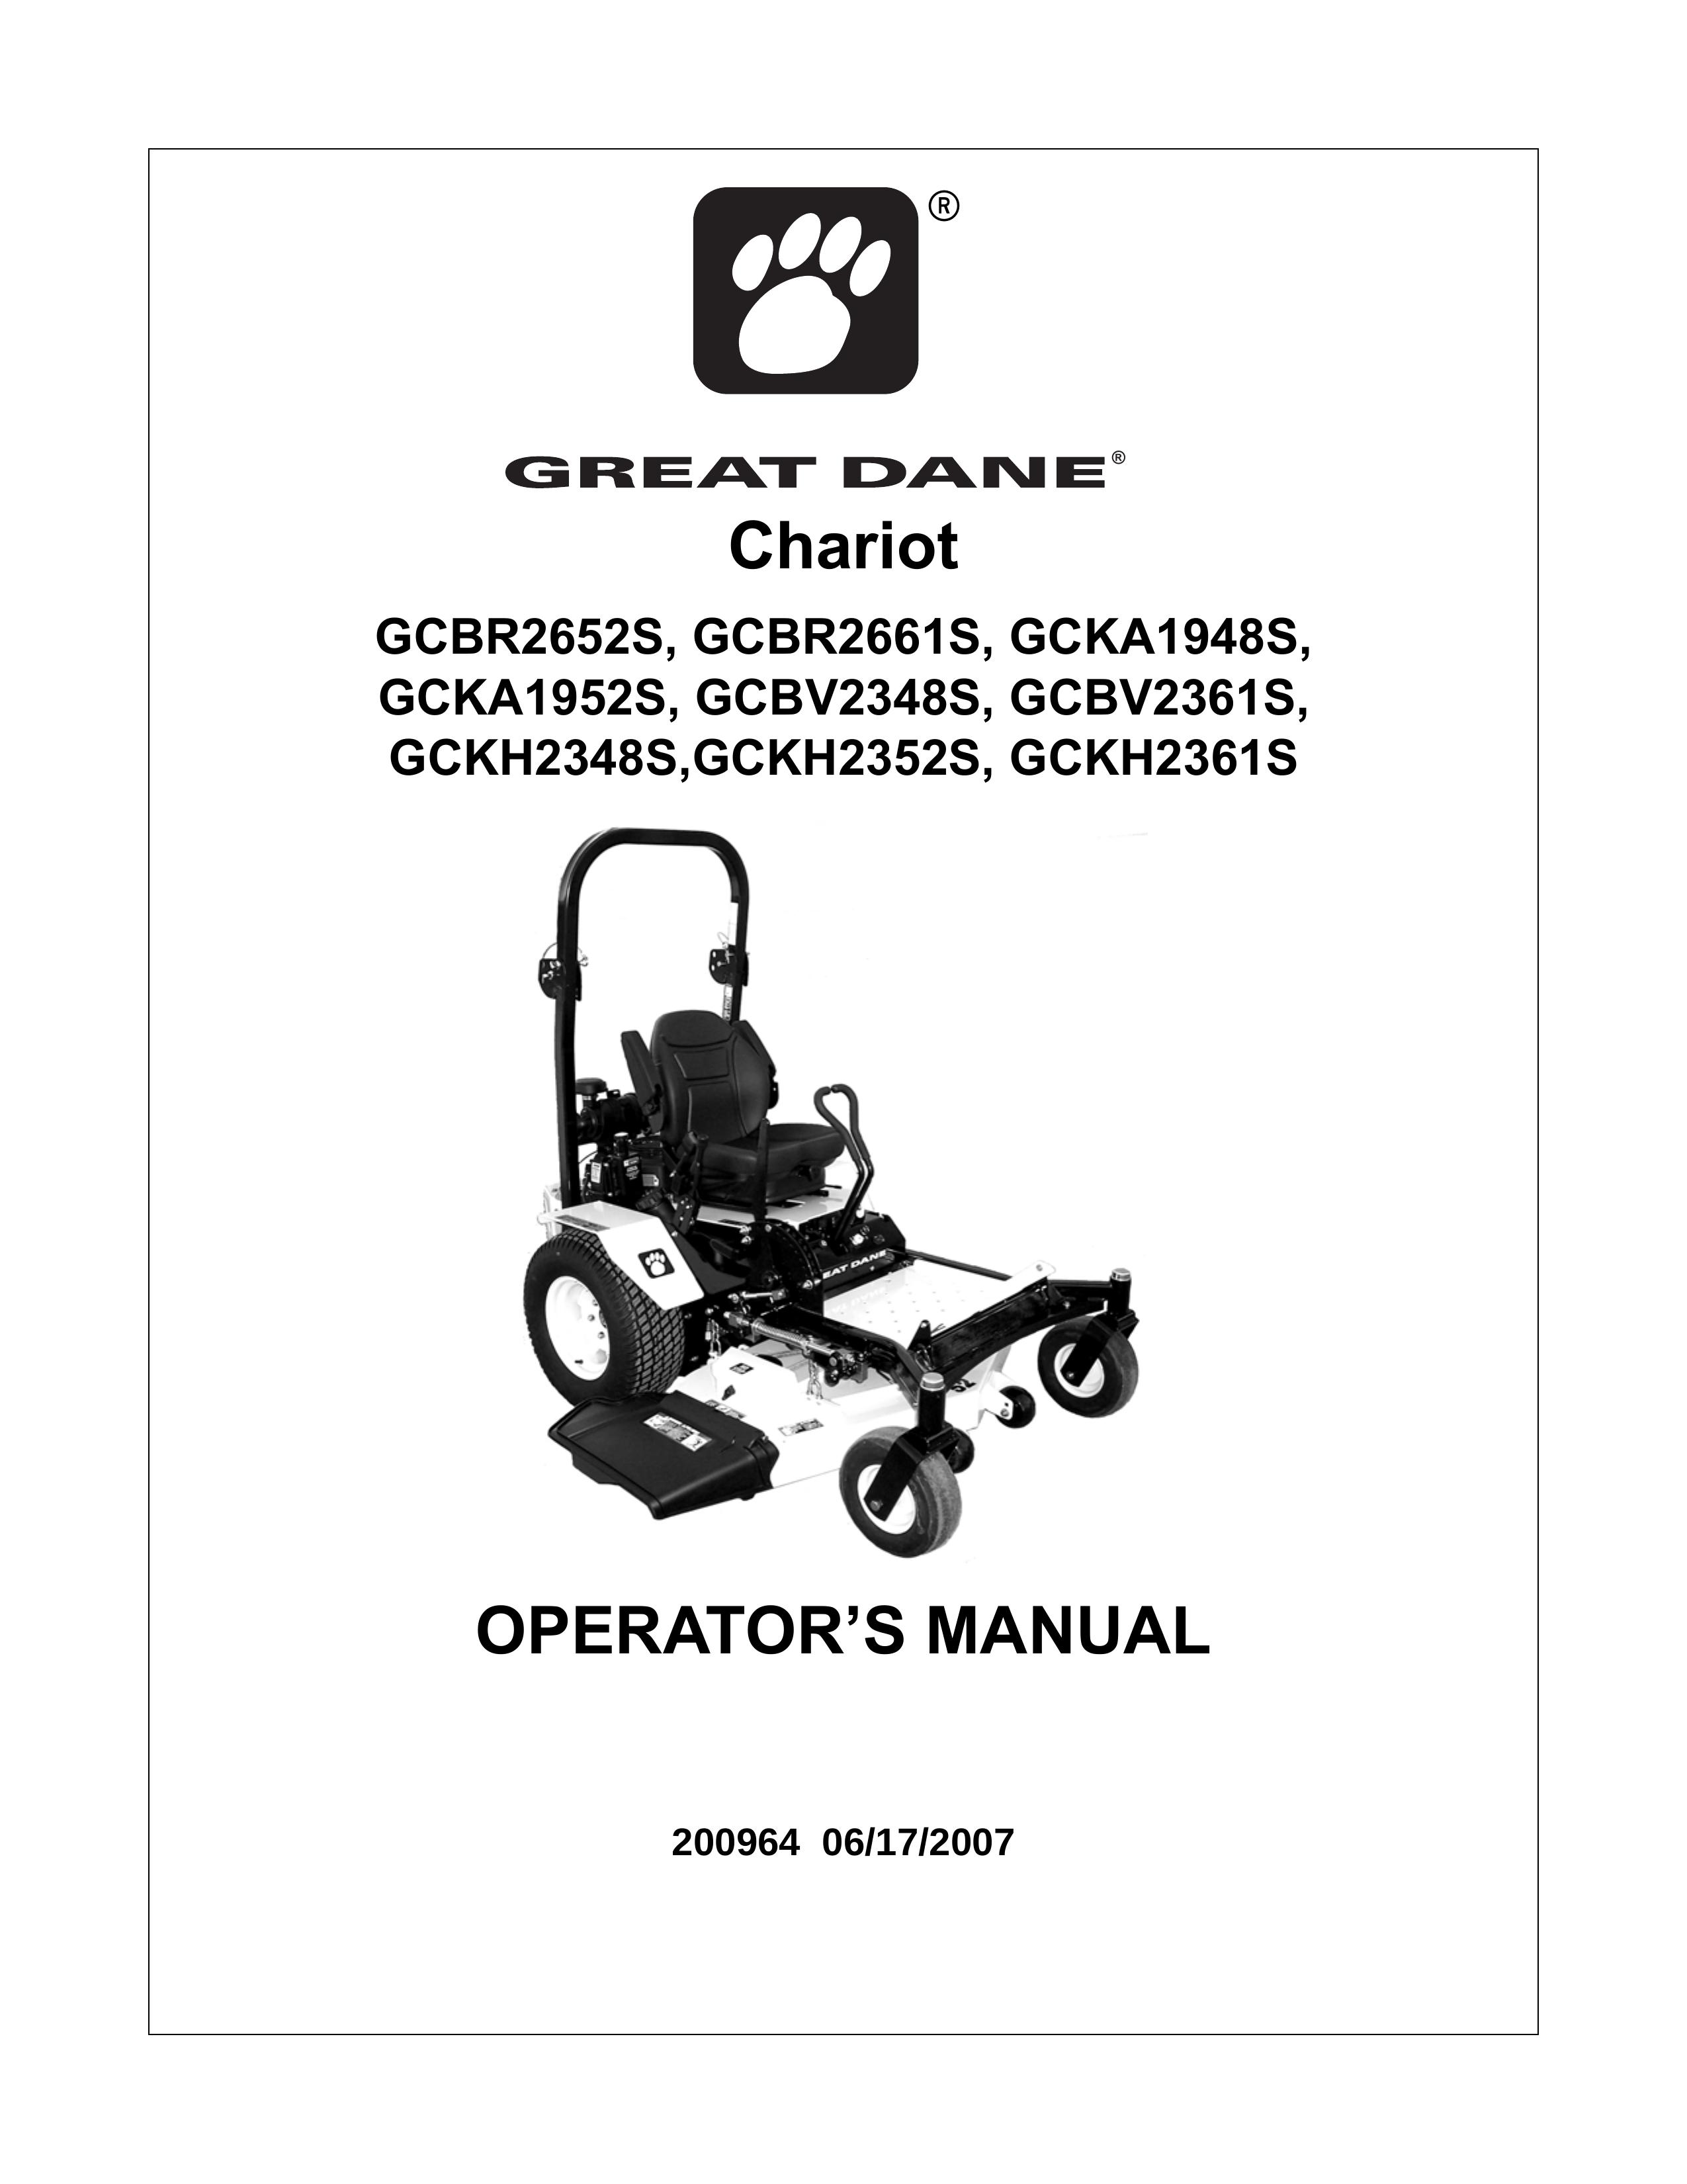 Great Dane GCKH2361S Lawn Mower User Manual